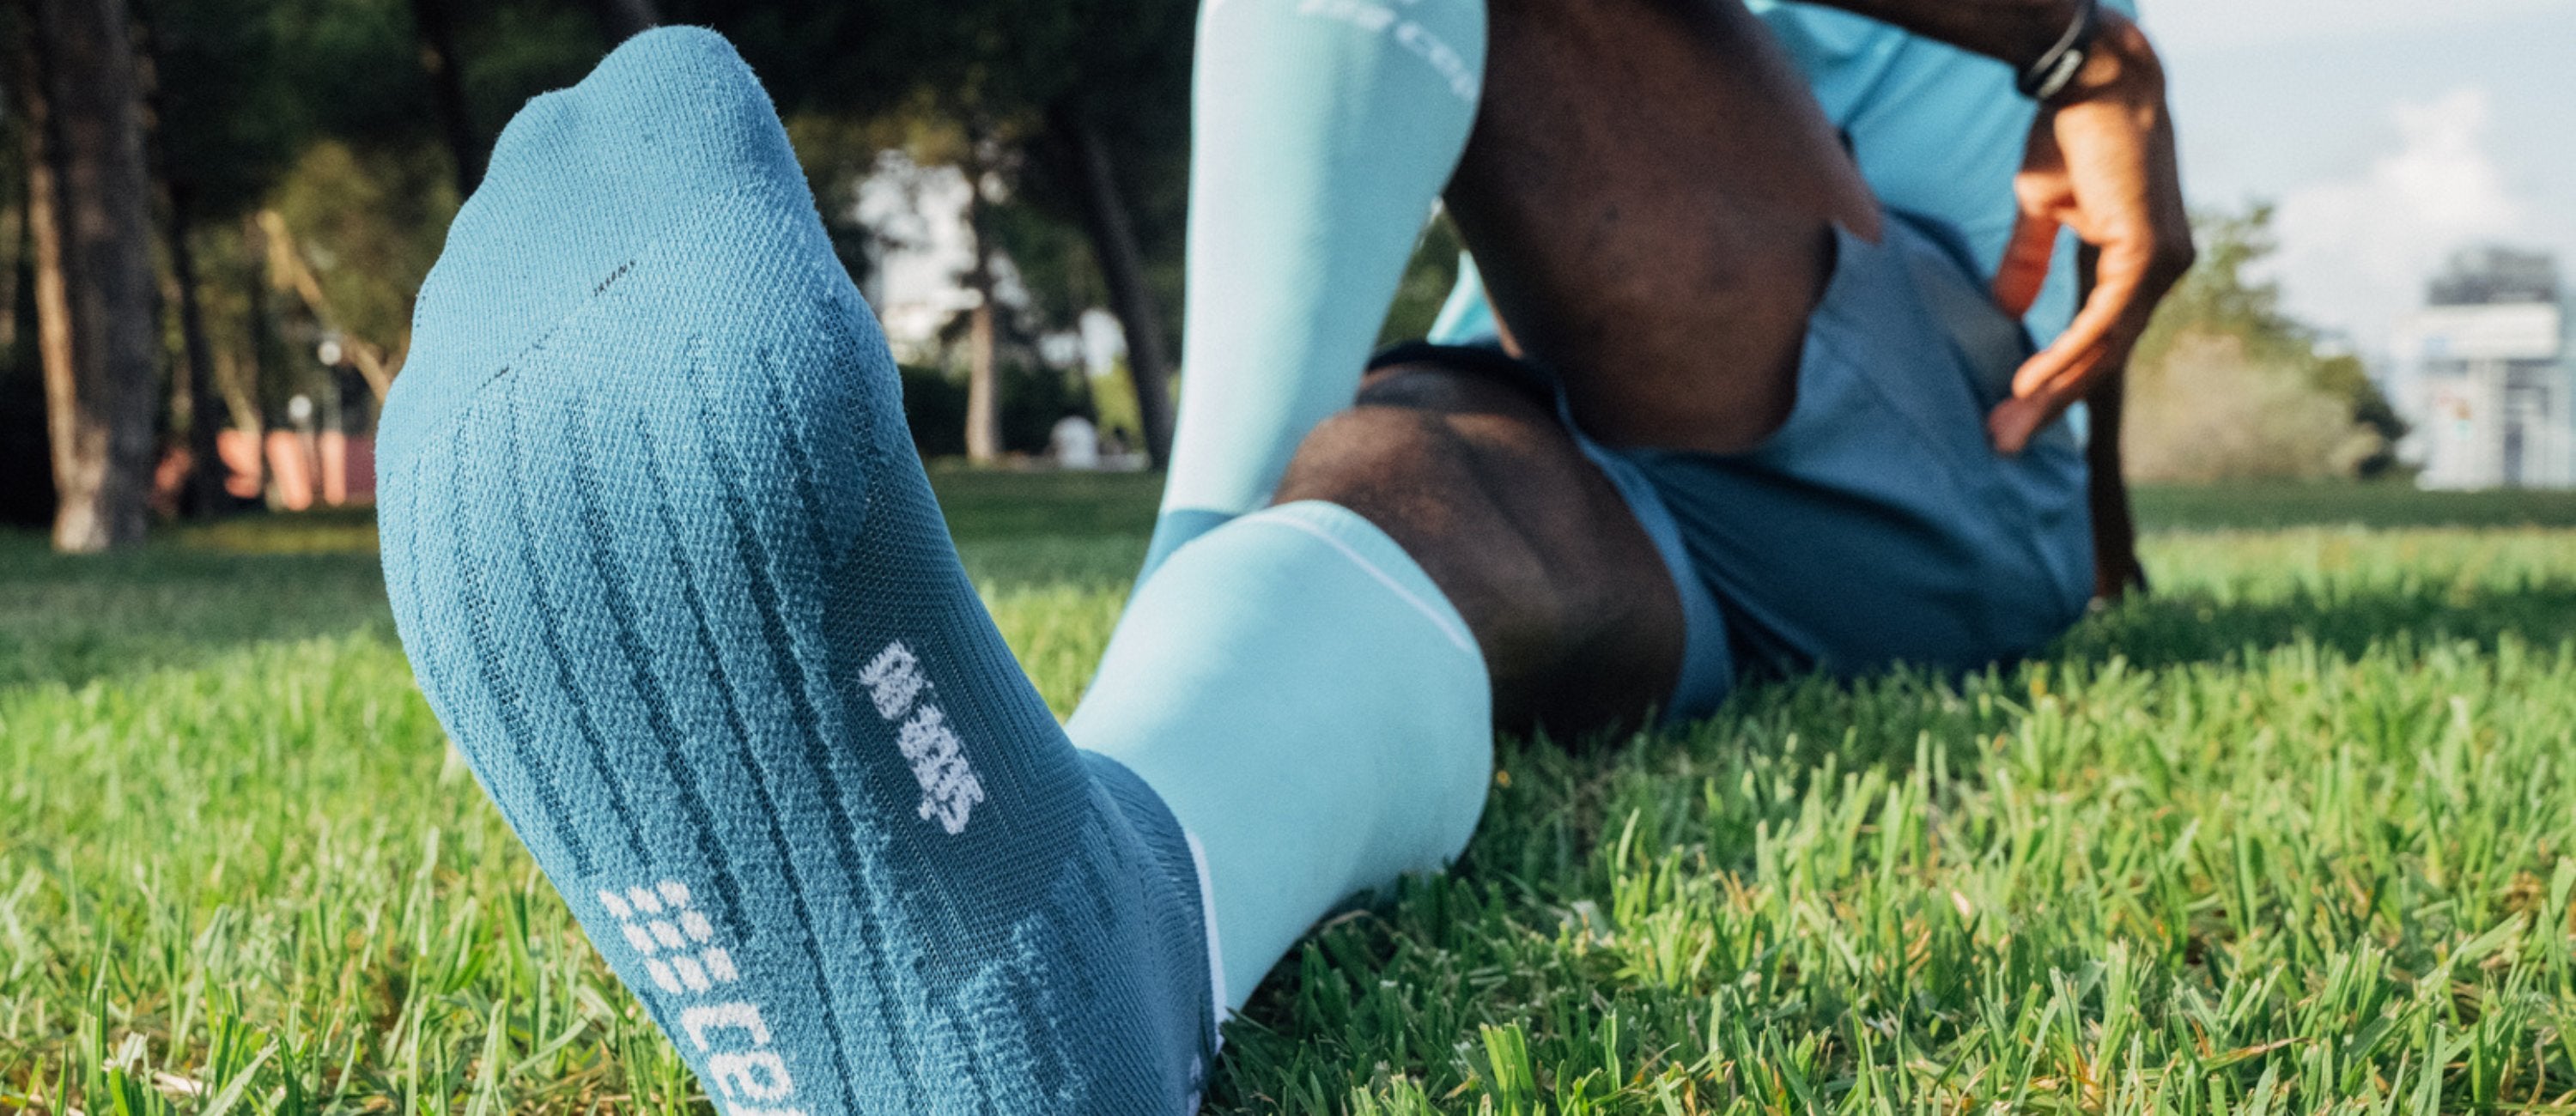 Compression Socks For Men  CEP Activating Compression Sportswear – CEP  Compression